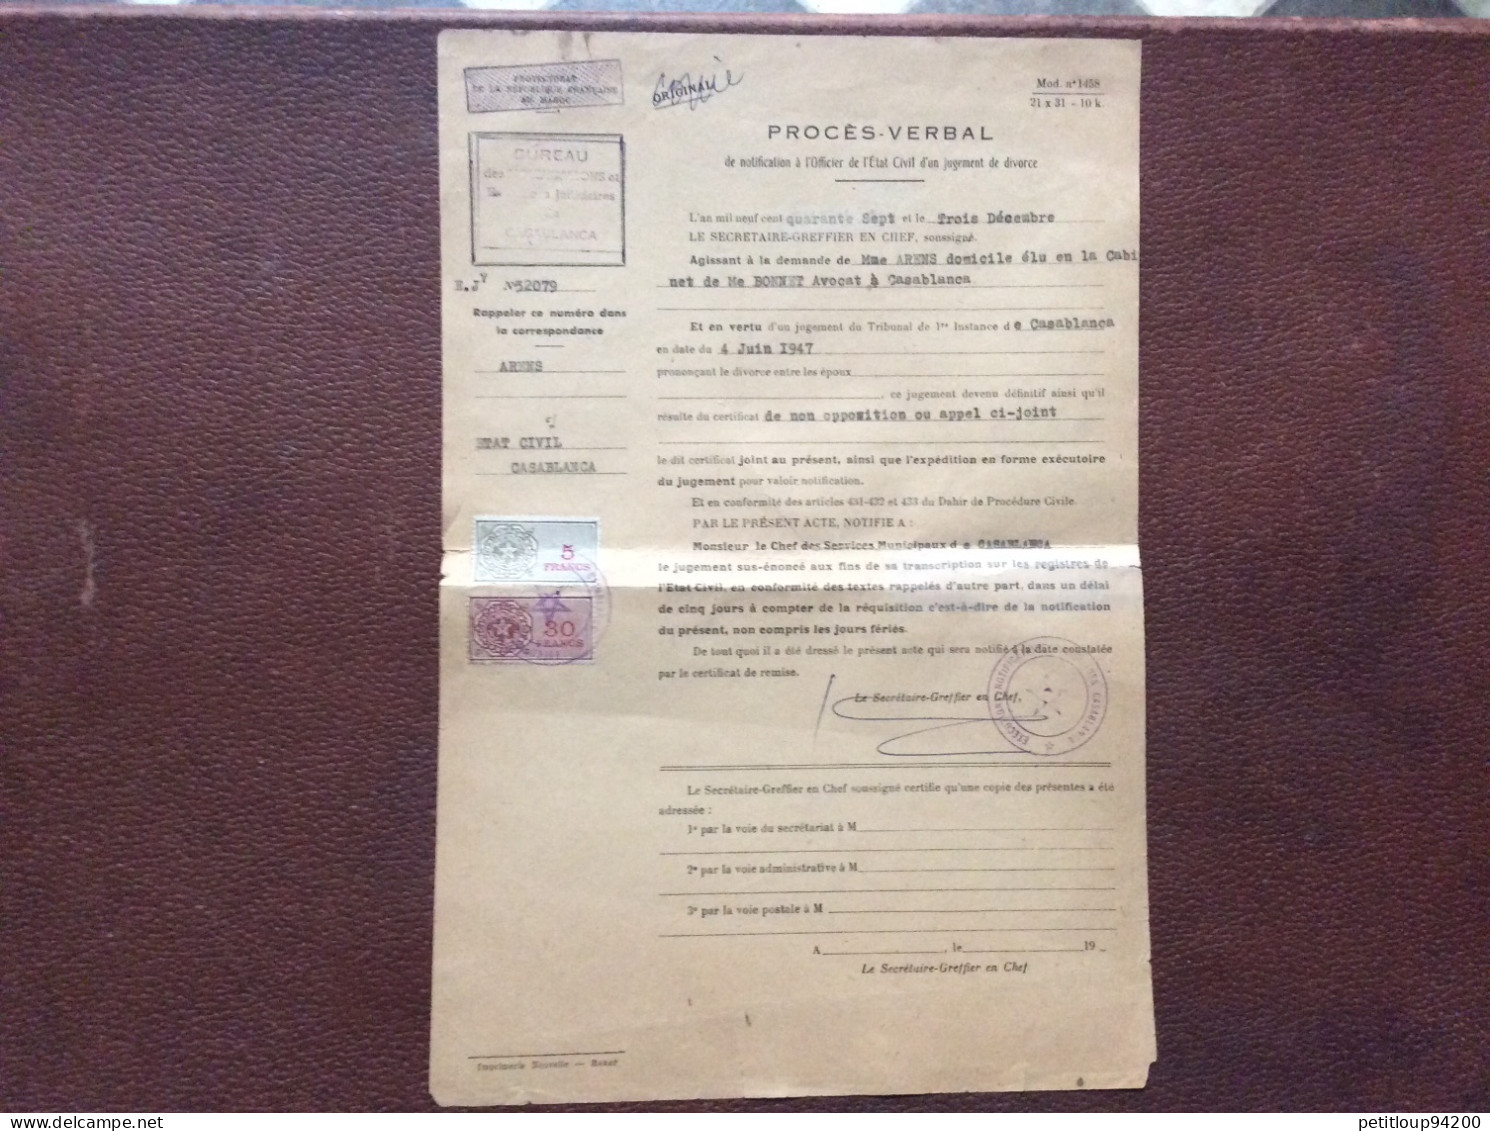 2 TIMBRES FISCAUX SUR DOCUMENT  Procès Verbal  *5 Francs & 30 Francs  CASABLANCA  Maroc  ANNÉE 1947 - Strafport